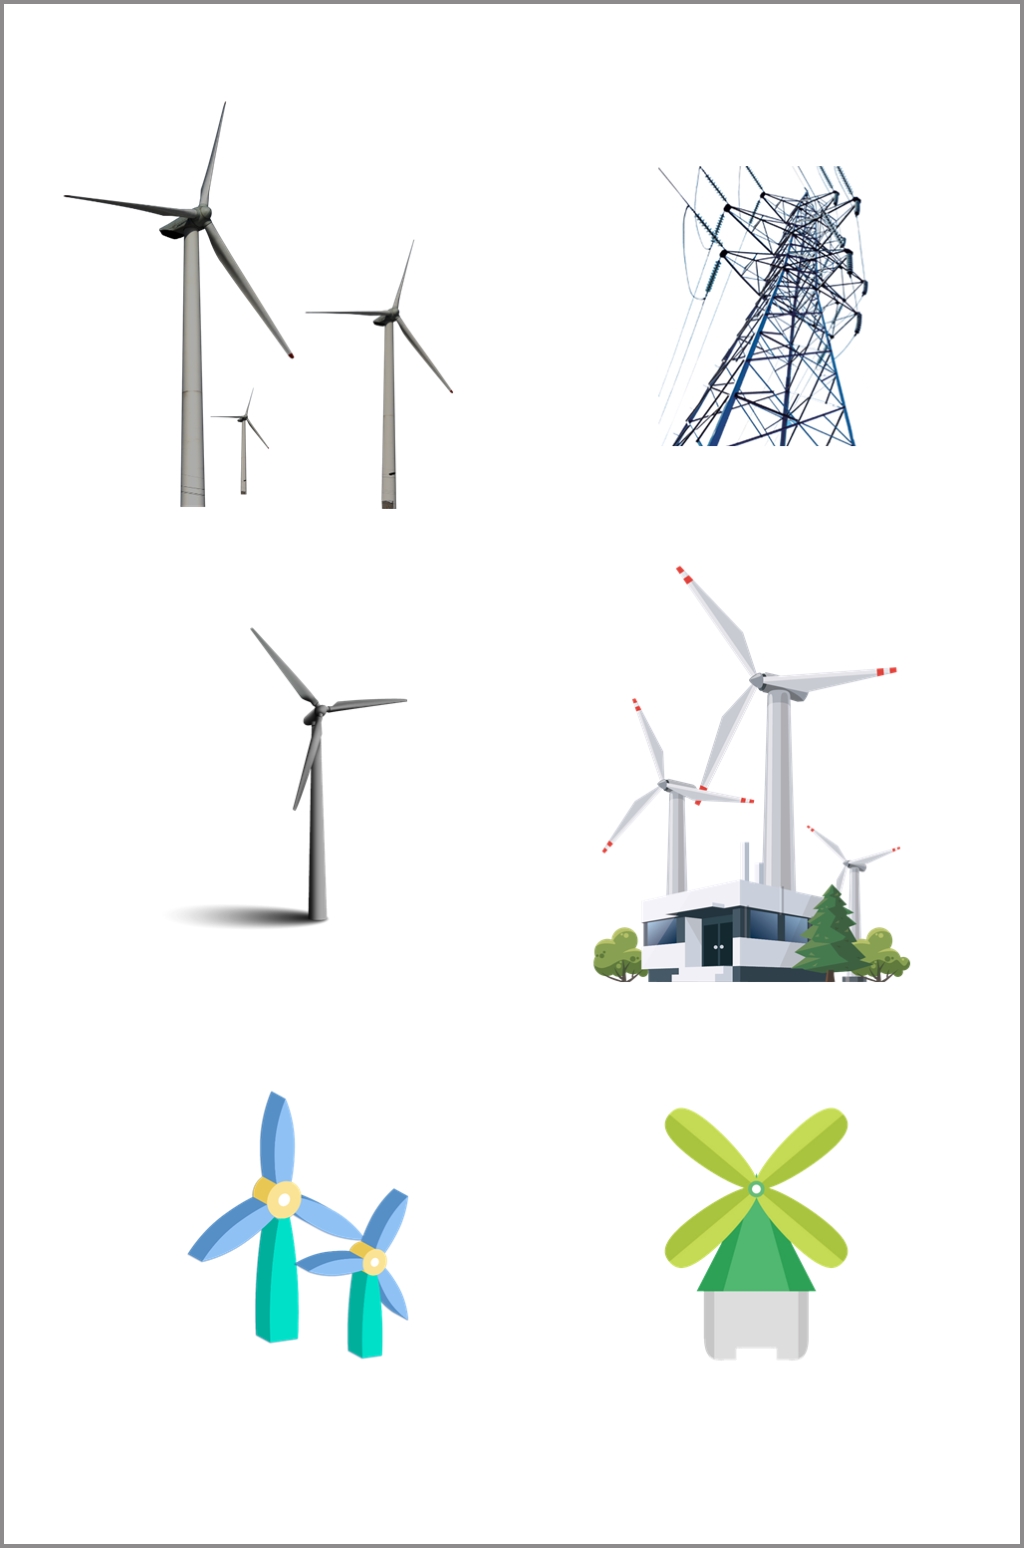 风力发电机抠图元素素材